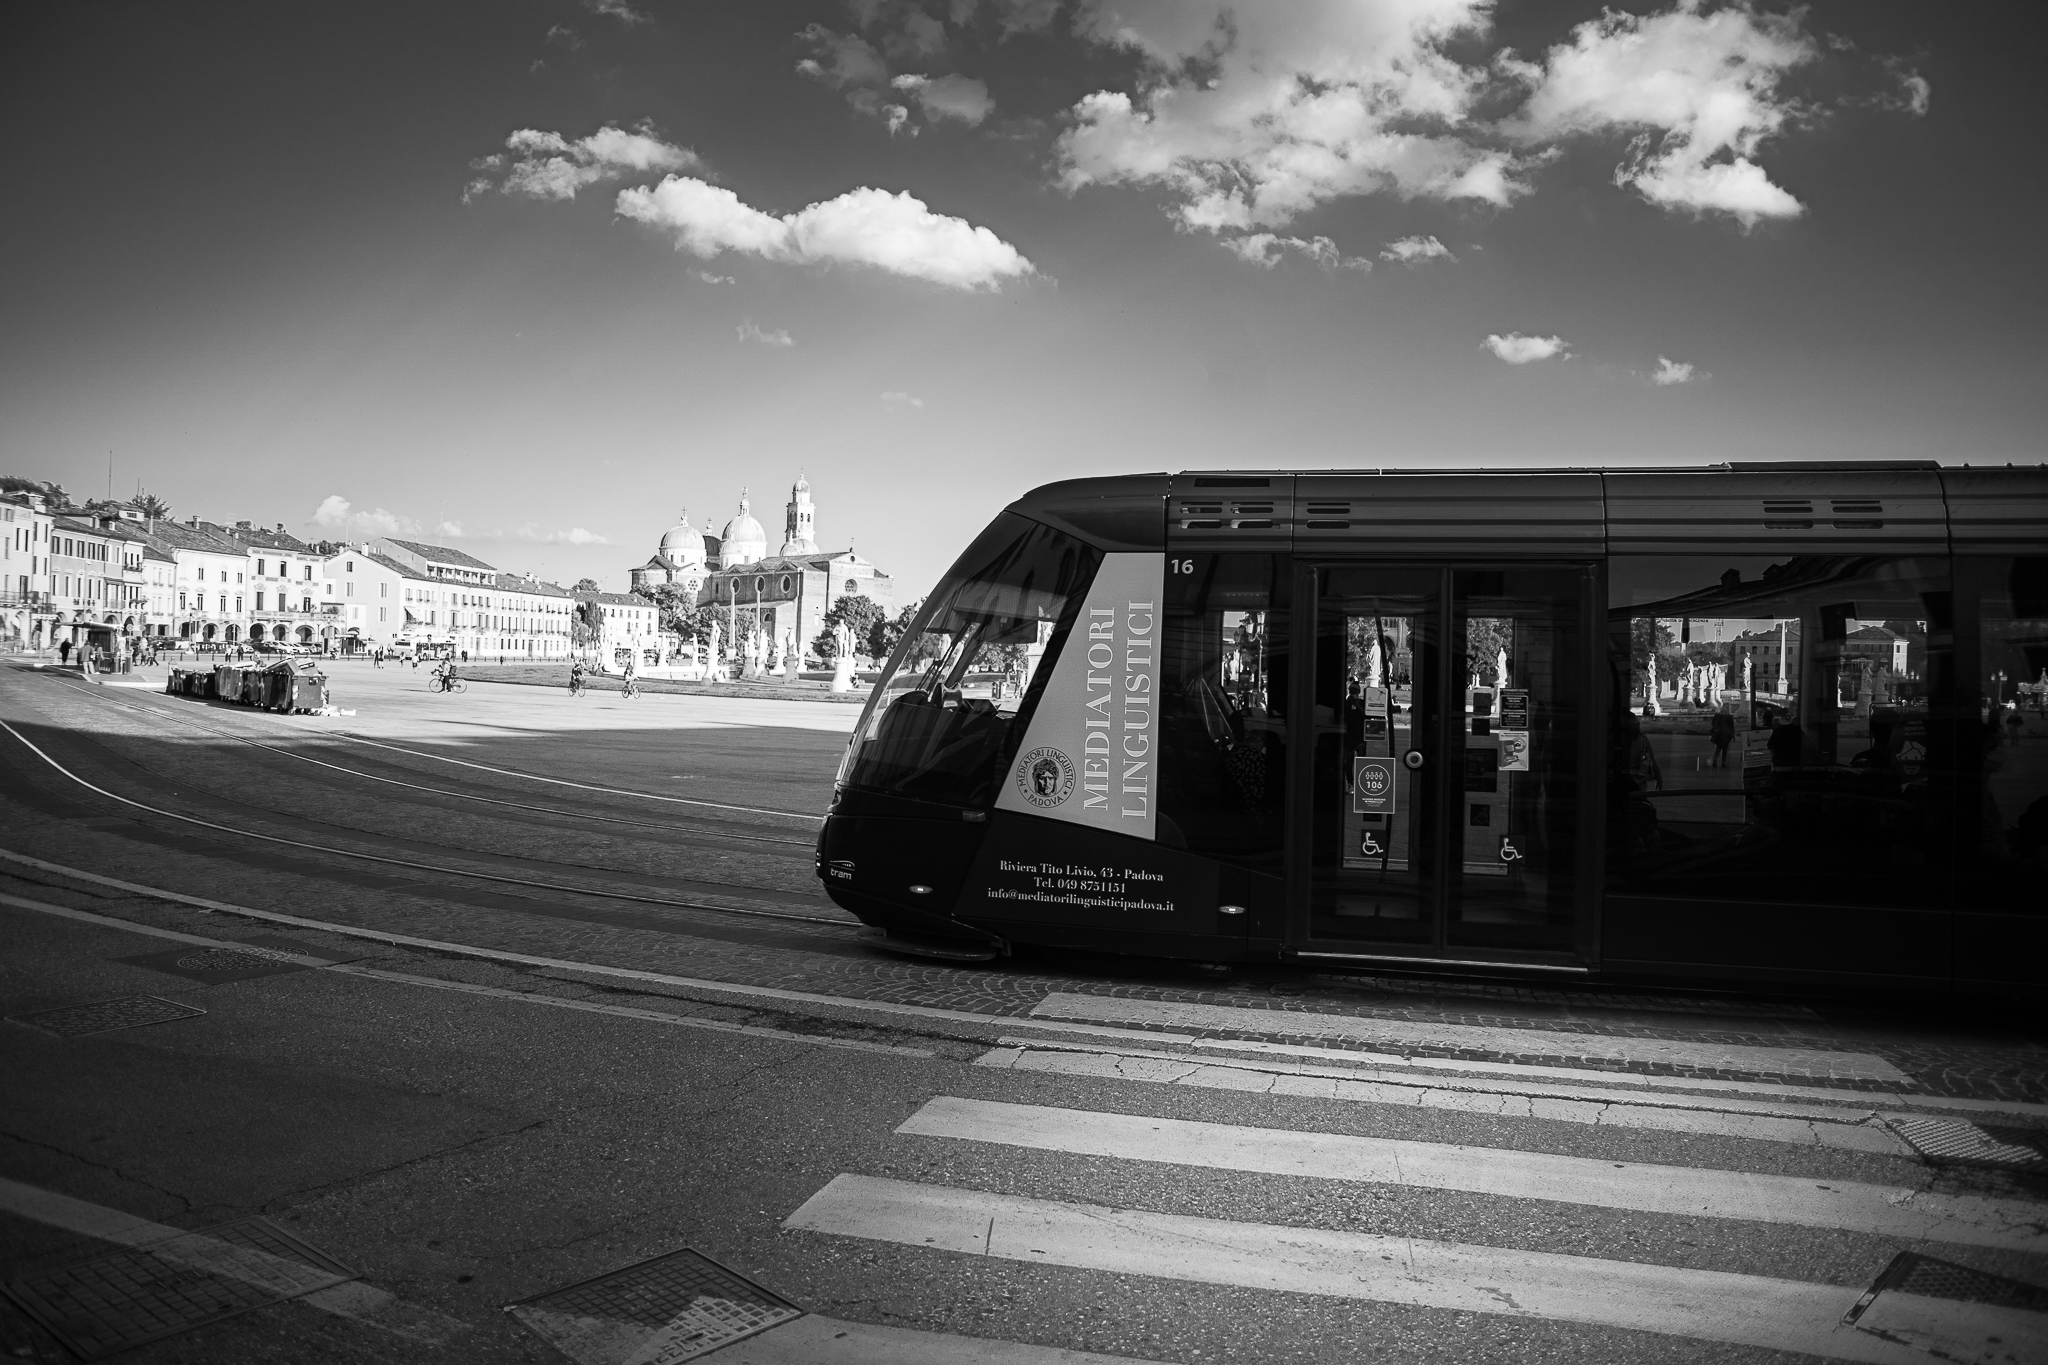 Padua, Prato della Valle, monorail tram...